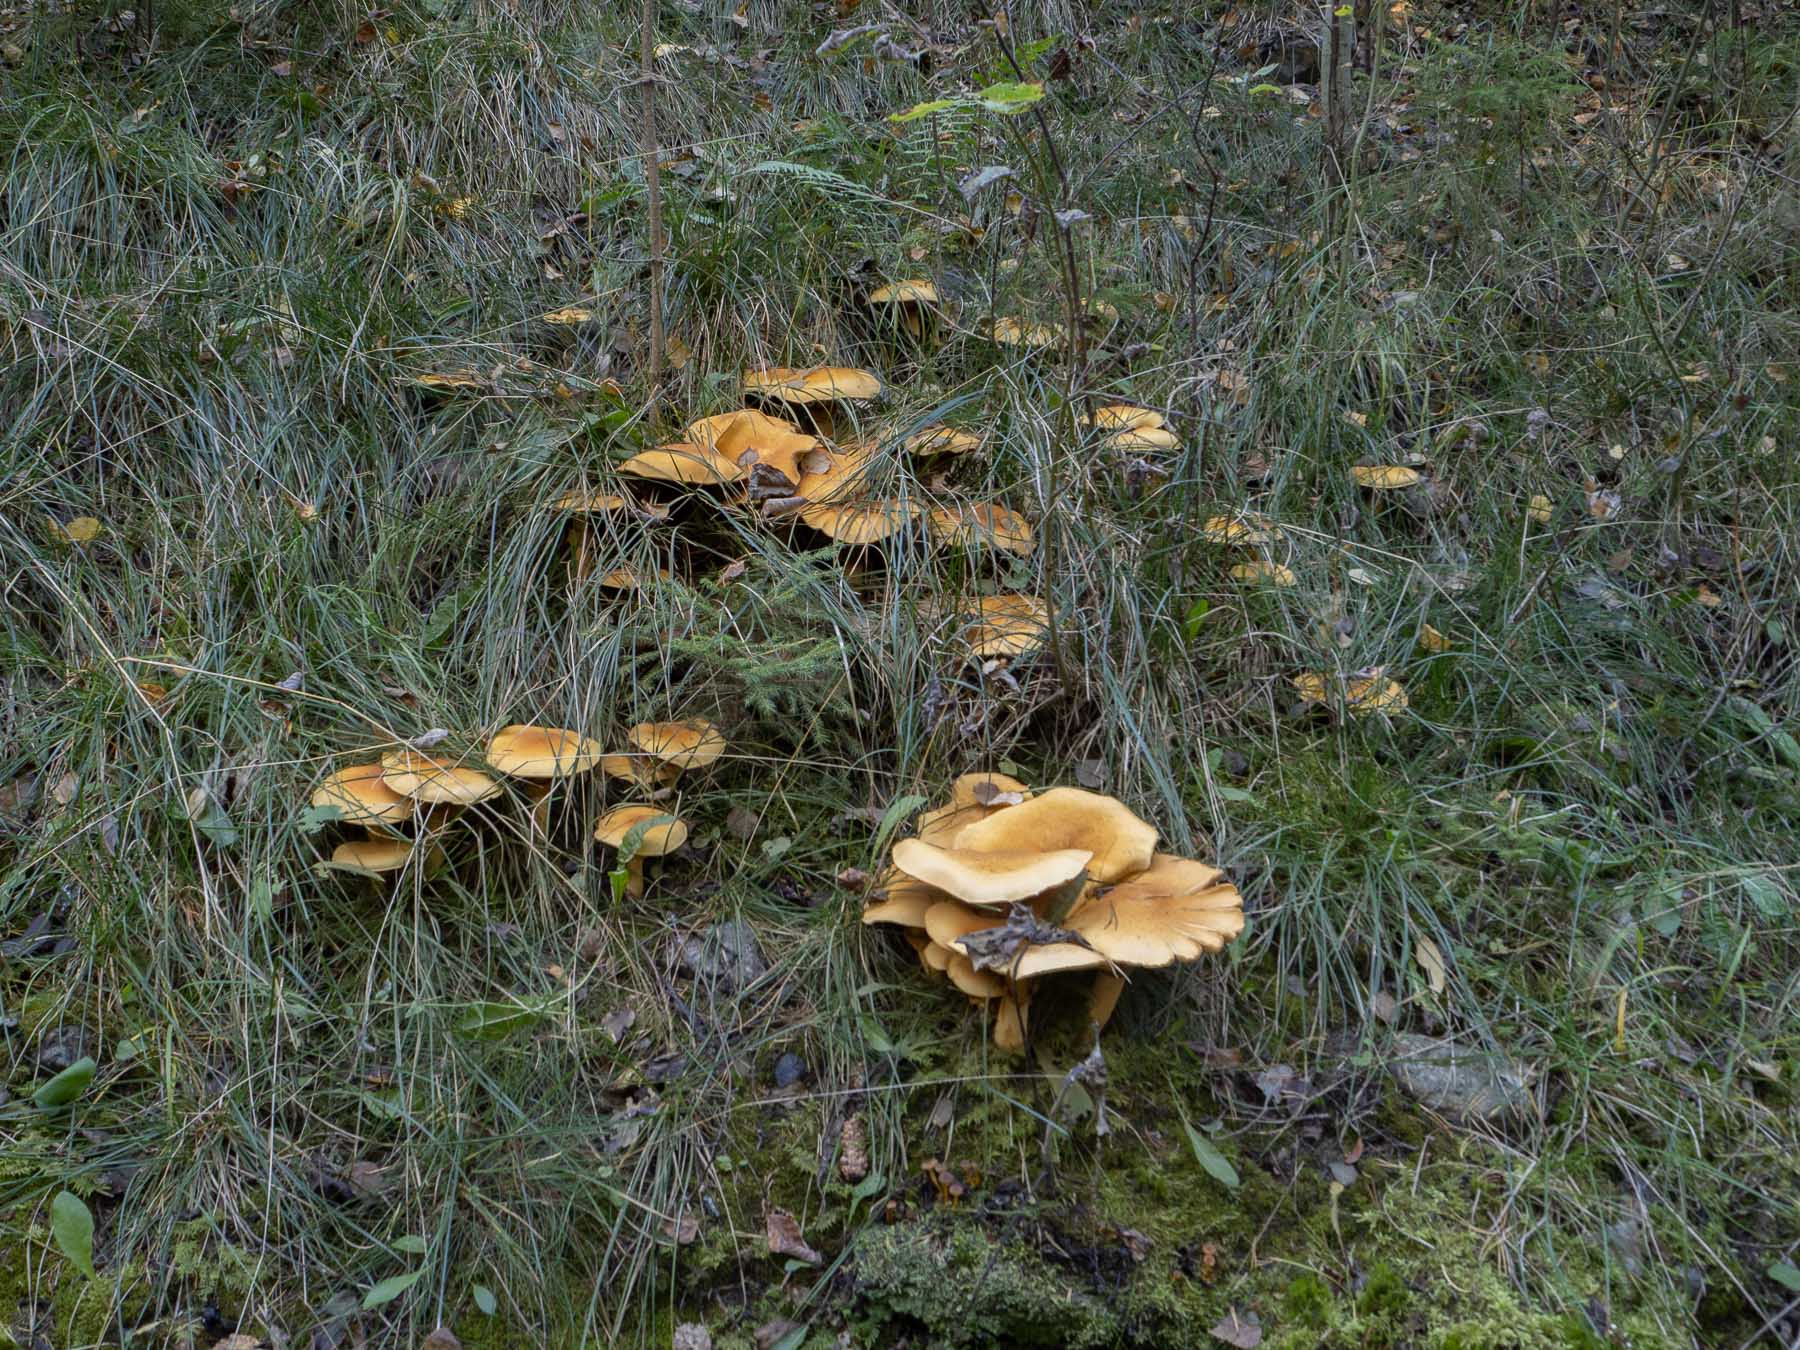 Феолепиота золотистая (Phaeolepiota aurea)Природный парк Görvälns, октябрь 2021.
На заросшей травой и кустарником искусственной насыпи. Автор фото: Сутормина Марина